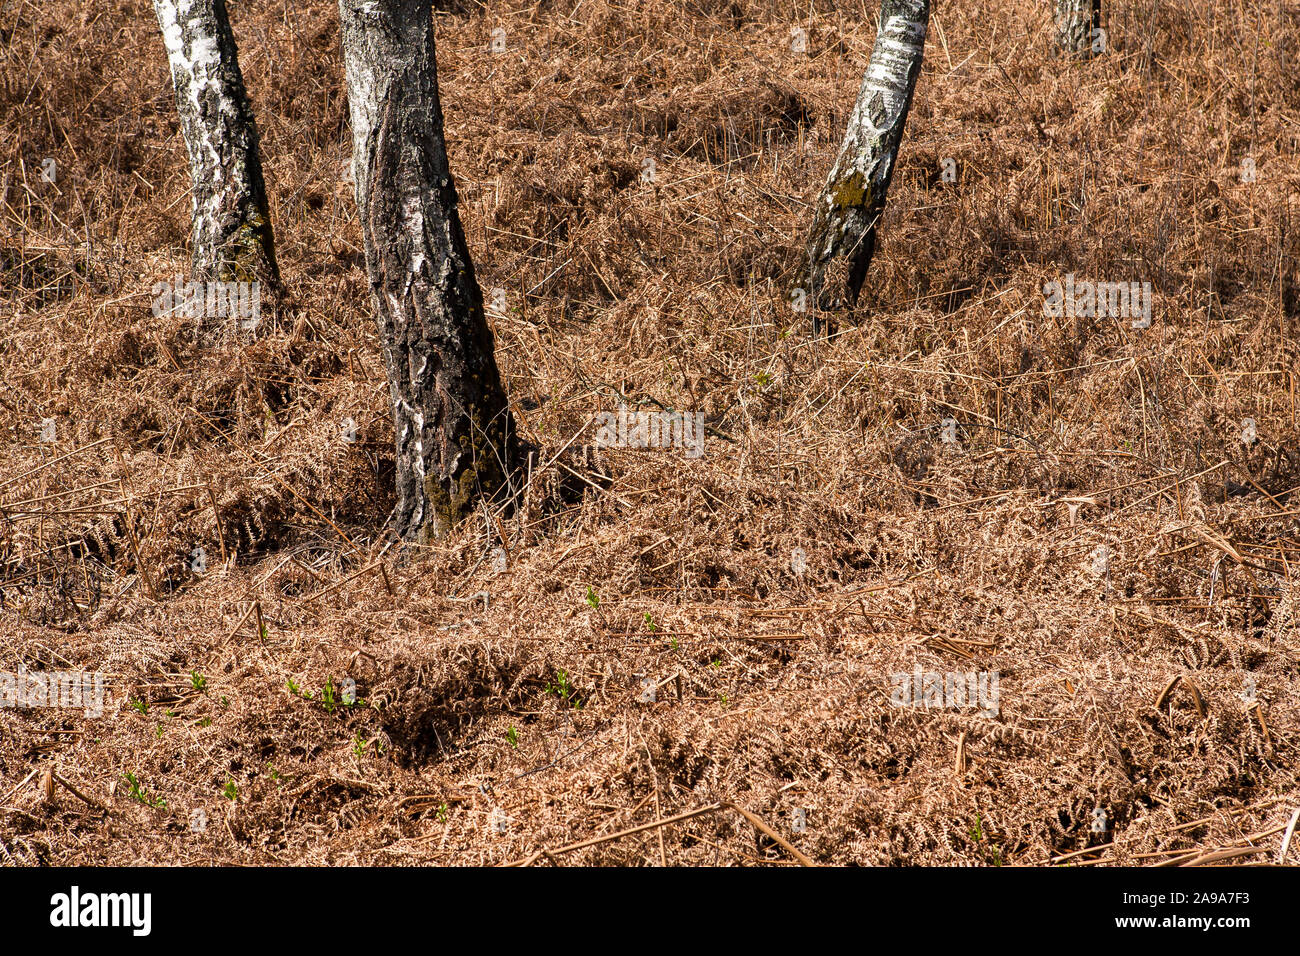 Dry undergrowth of bracken in a birch forest in Slovenia. Stock Photo